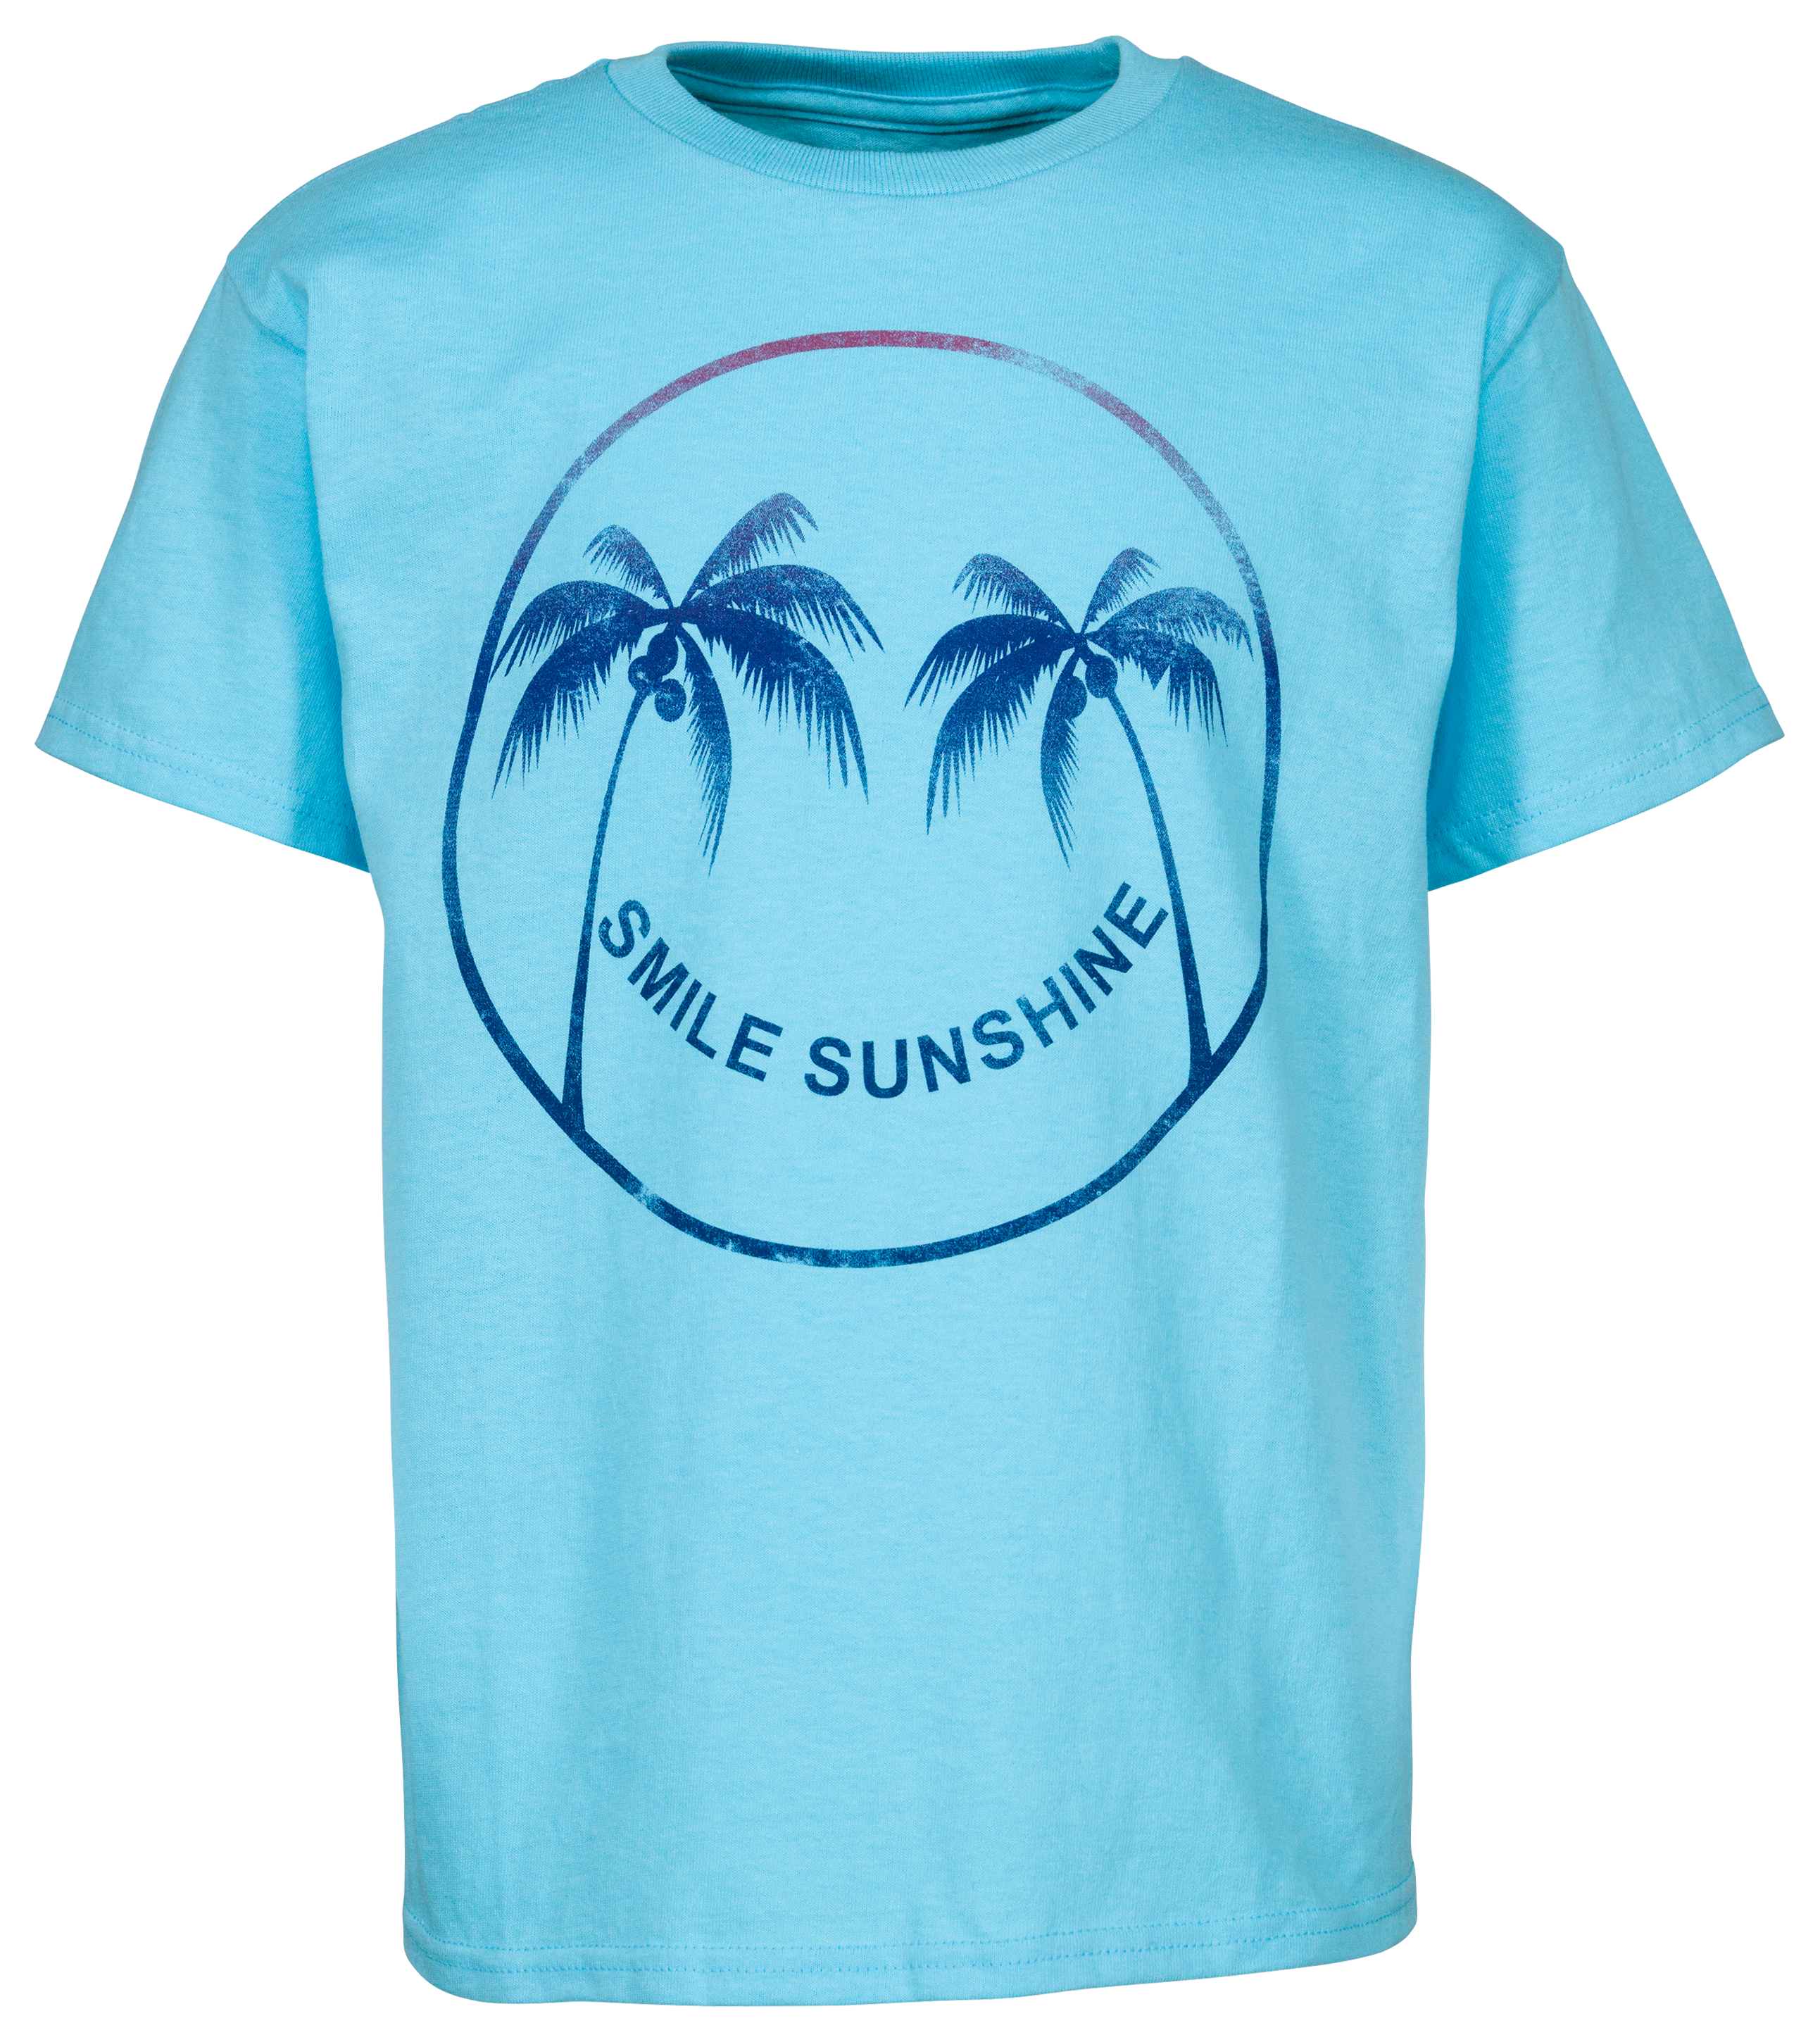 Salt Life Smile Sunshine Short-Sleeve T-Shirt for Kids